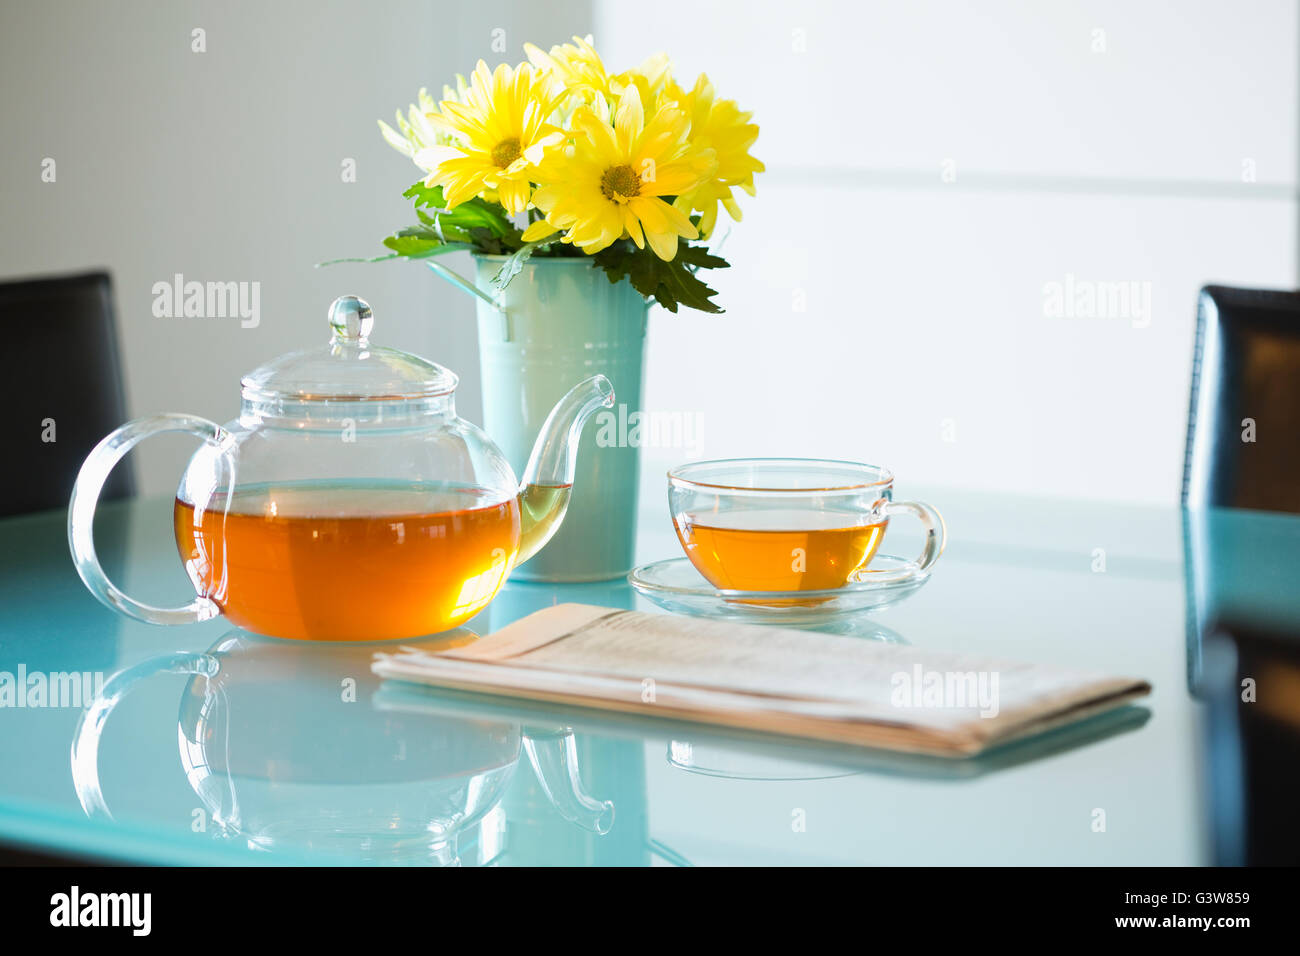 Té con tetera y bouquet de margaritas amarillas en la tabla Foto de stock